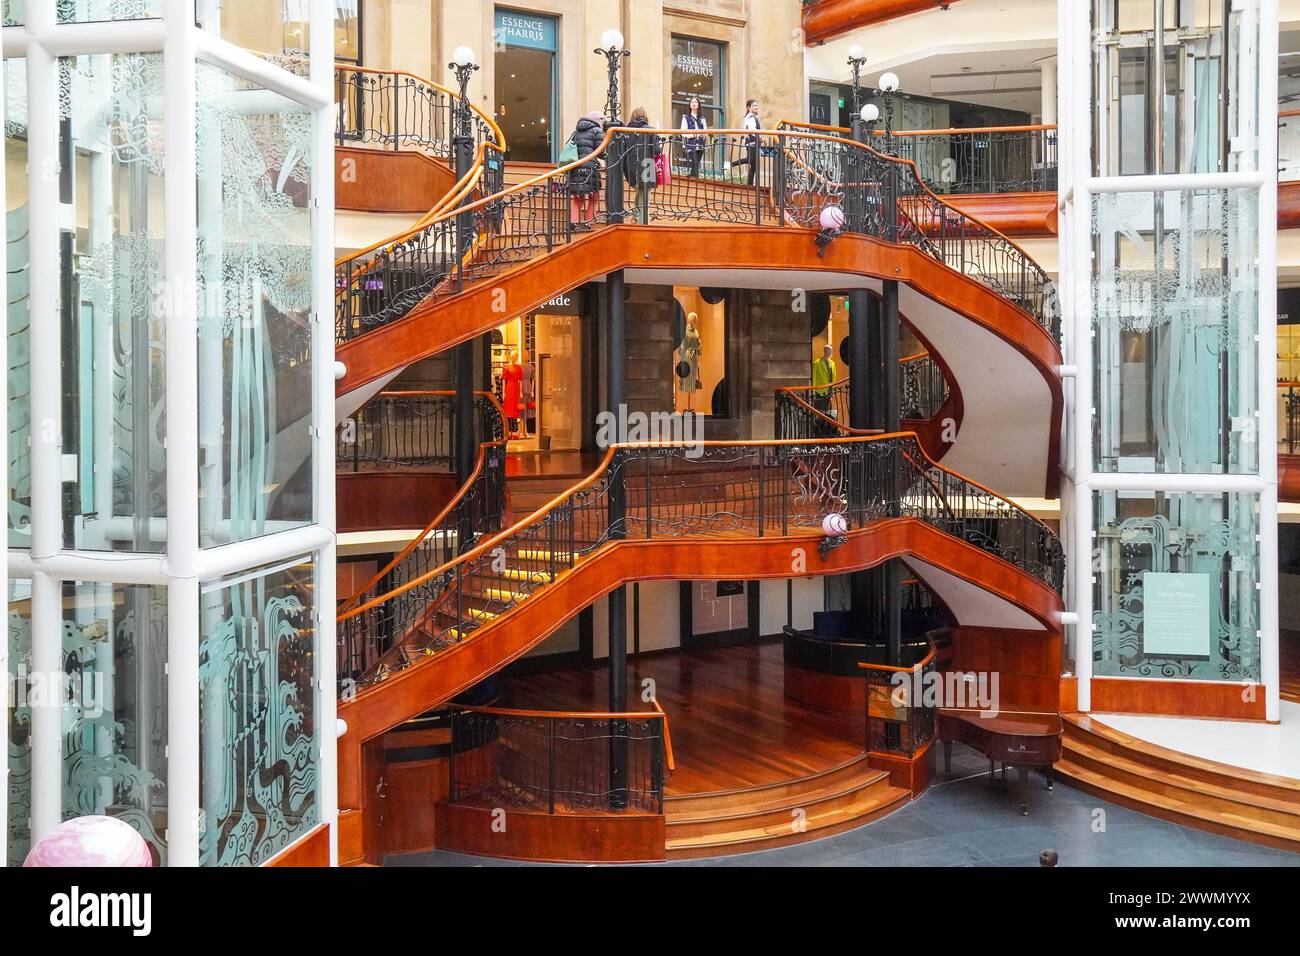 All'interno del centro commerciale Princes Square che mostra la sala dei ristoranti al piano terra e le scale mobili per le zone dello shopping, Glasgow, Scozia, Regno Unito Foto Stock